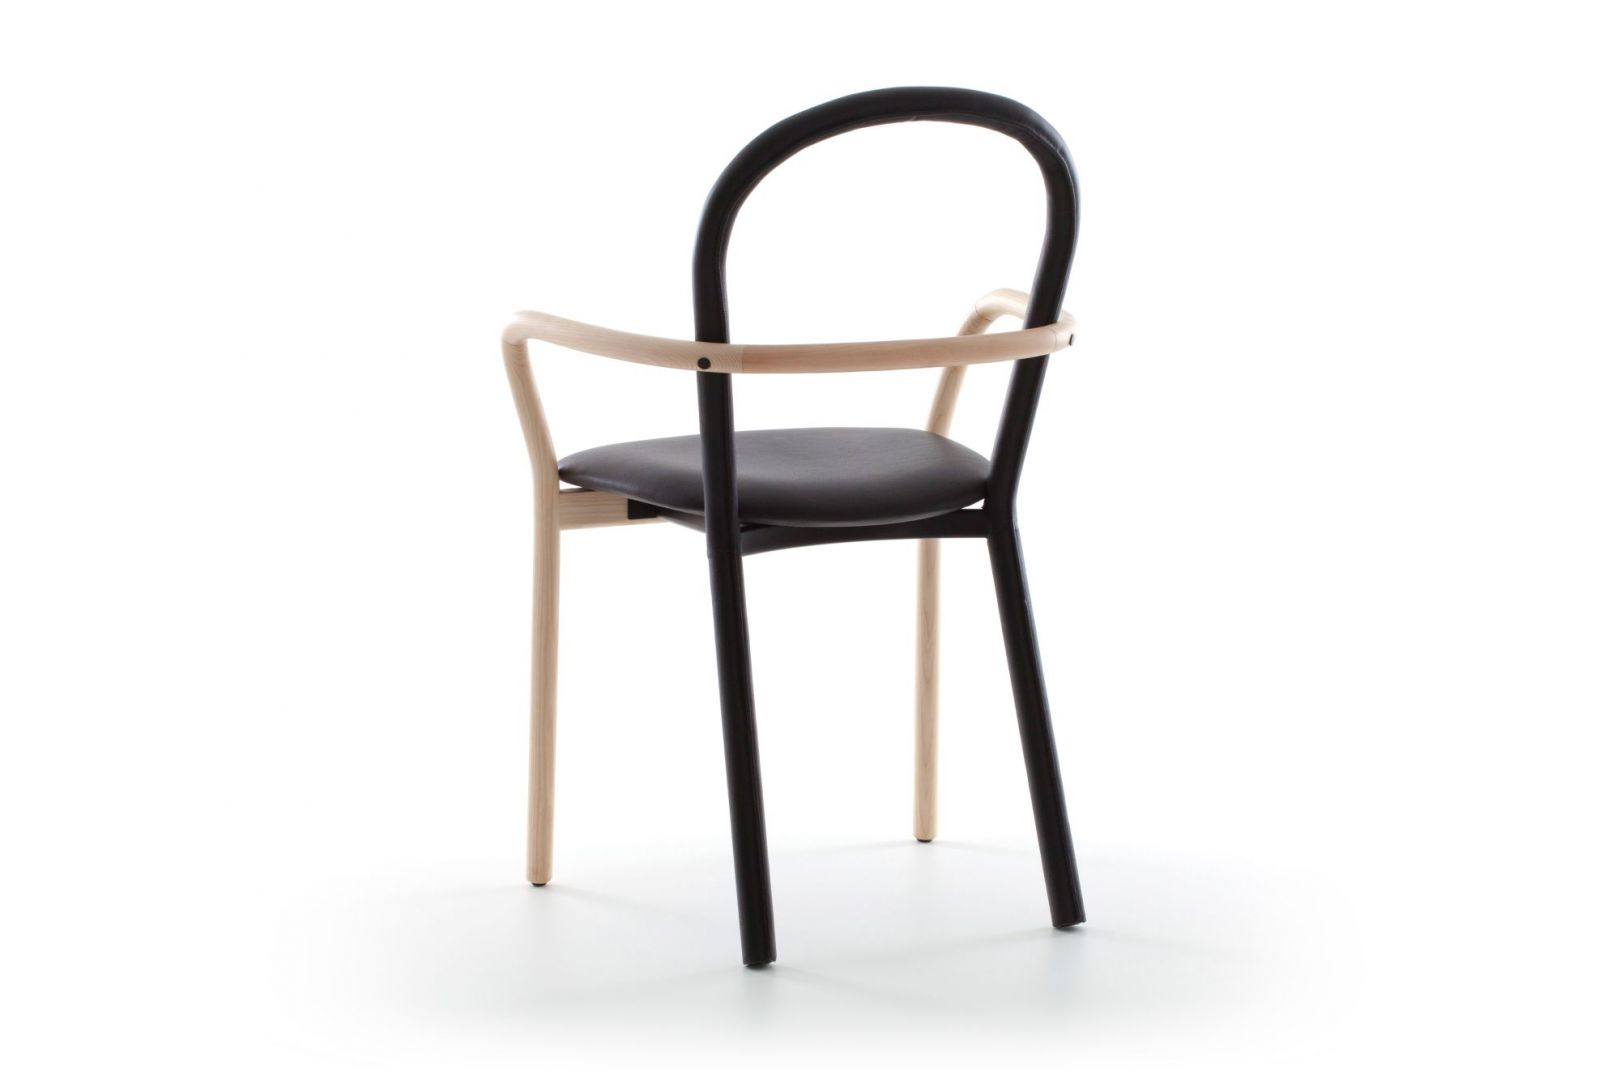 Prosta forma, czarna skóra i kontrastowe połączenie drewna. Krzesło Gentle łączy archetypiczny kształt z ponadczasową elegancją w stylu retro. Fot. Porro